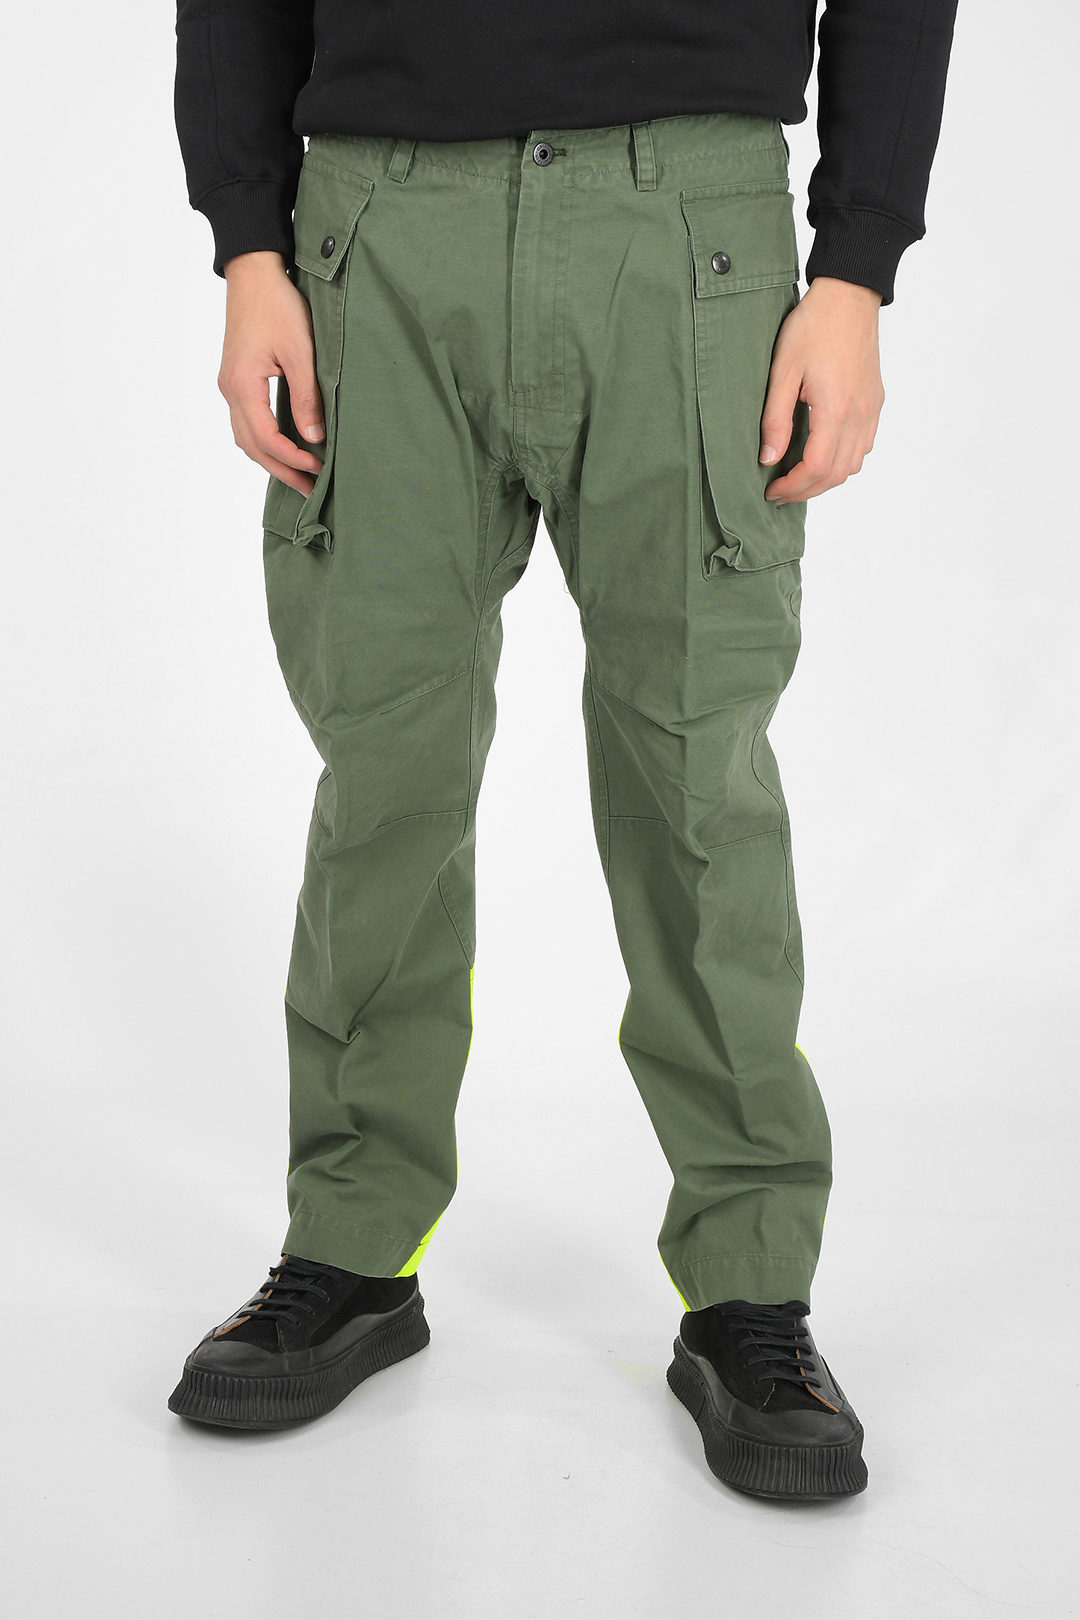 Griffin belt loops cargo pants men - Glamood Outlet